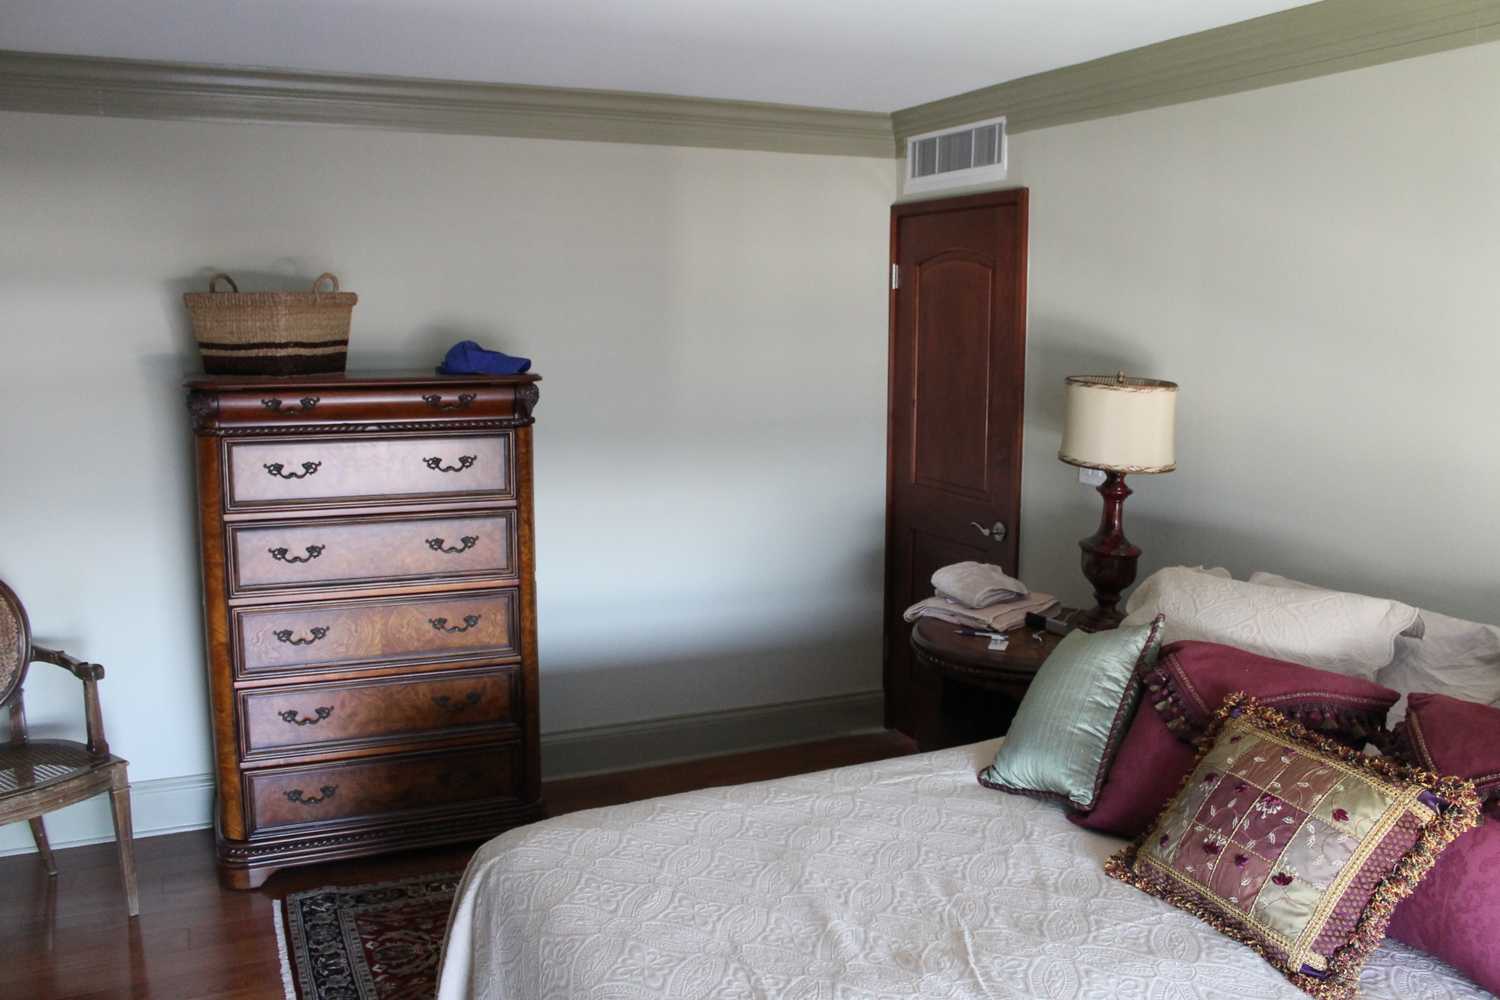 Bedroom & Living Room Remodel - Chicago